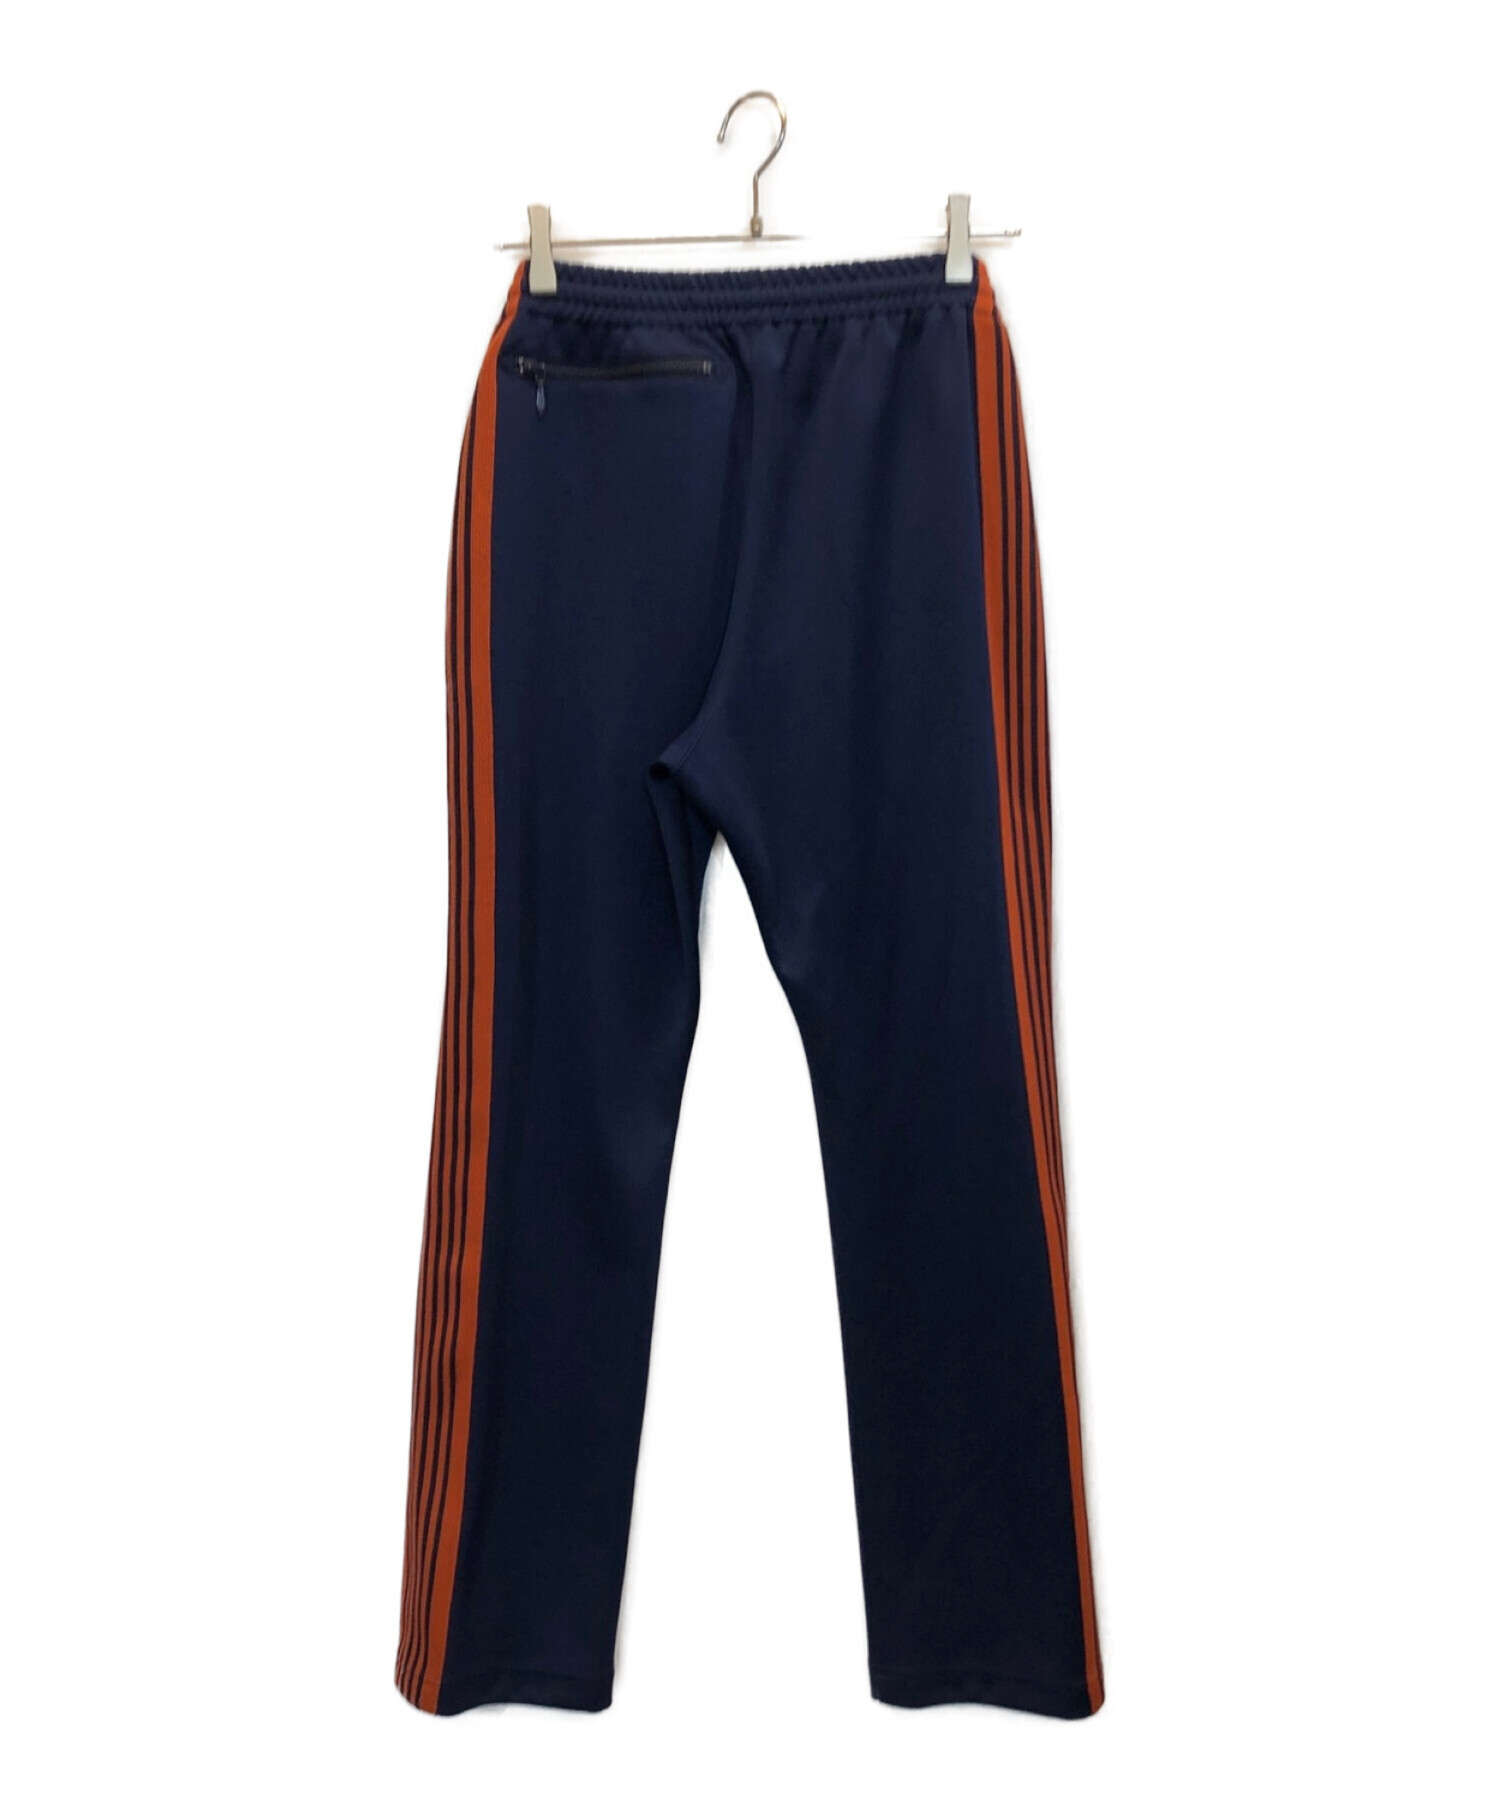 Needles (ニードルズ) jeans factory (ジーンズファクトリー) 別注ナロートラックパンツ オレンジ×ネイビー サイズ:XS